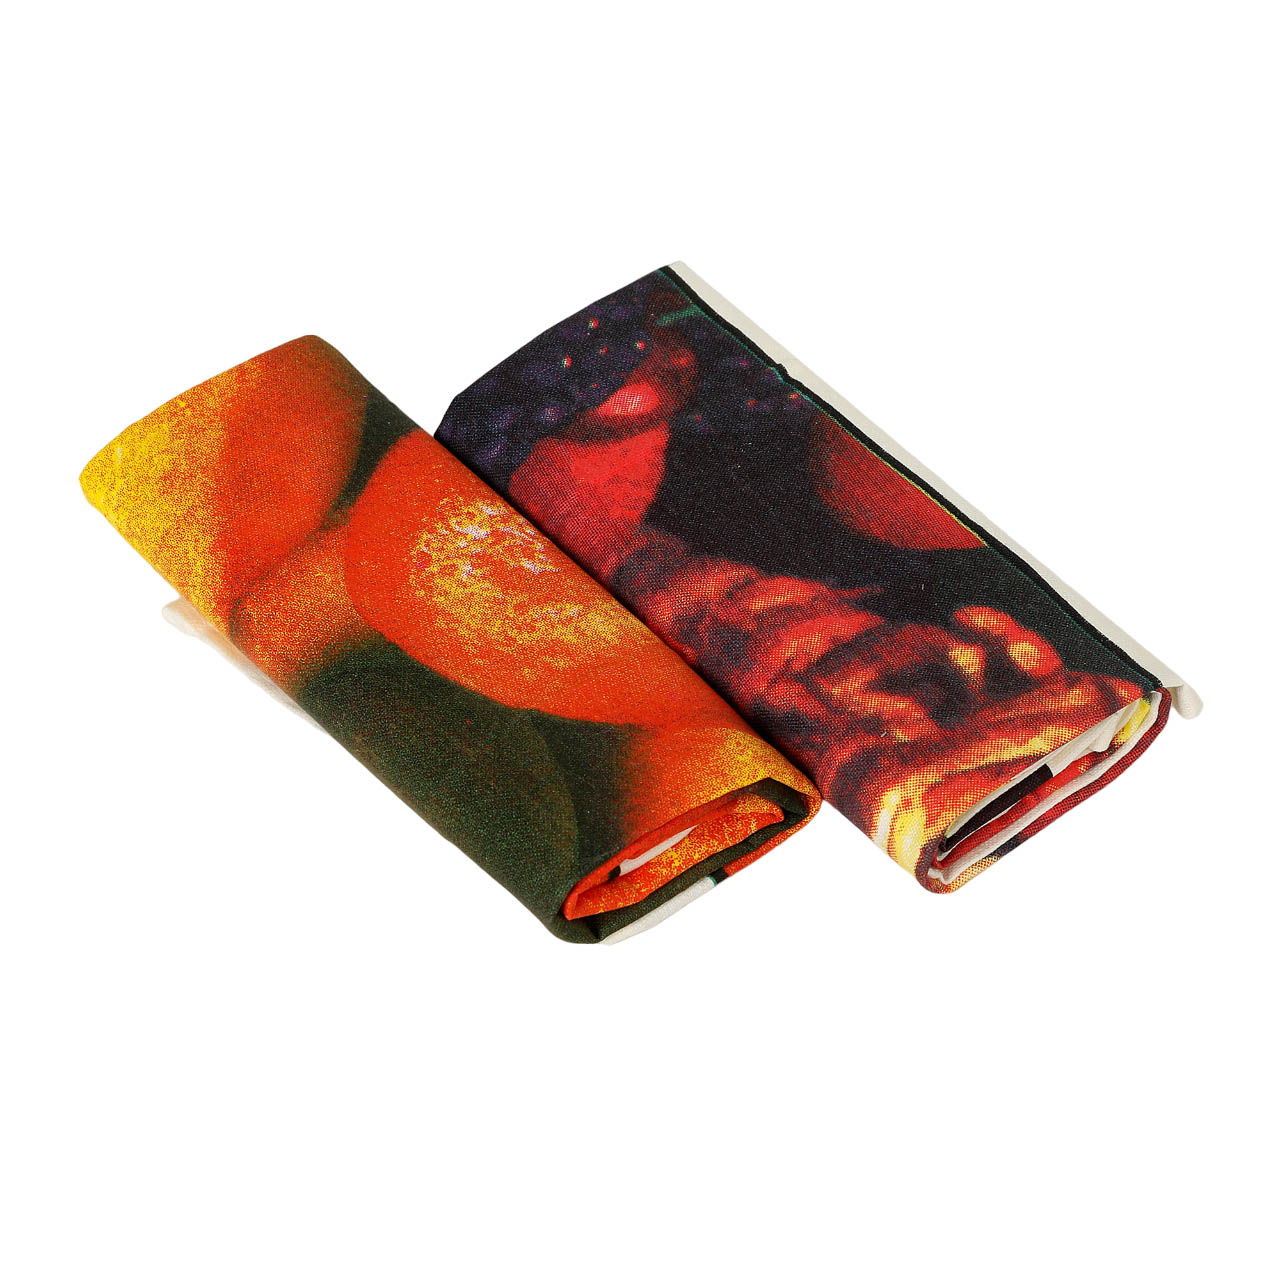 Полотенца Grand textile 50x70 см xлопковые оранжево-красные 2 шт